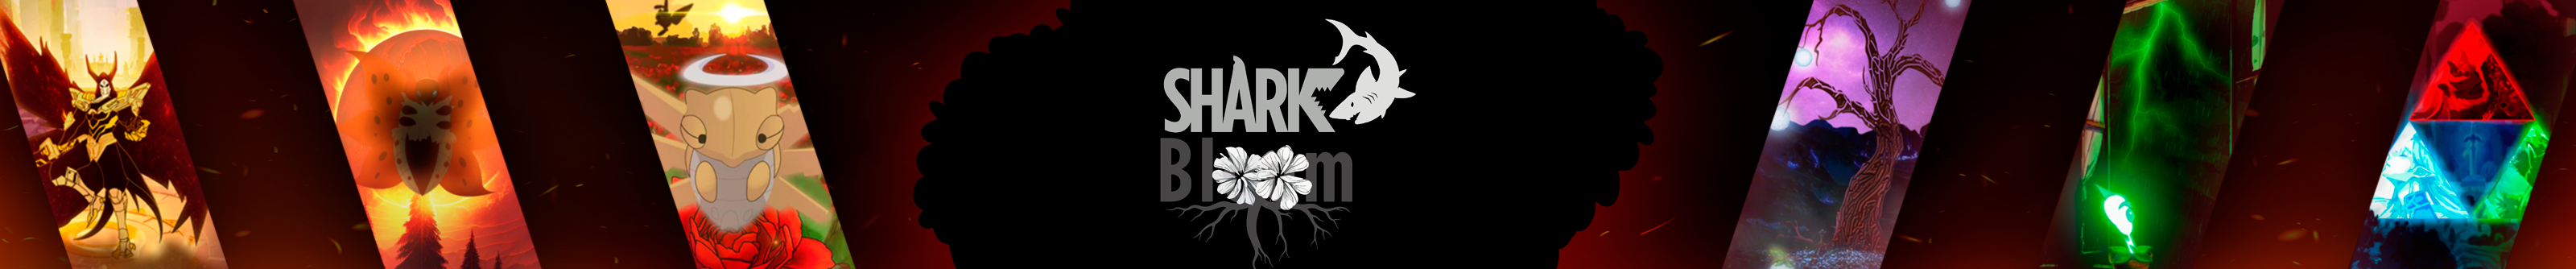 Profil-Banner von Shark Bloom